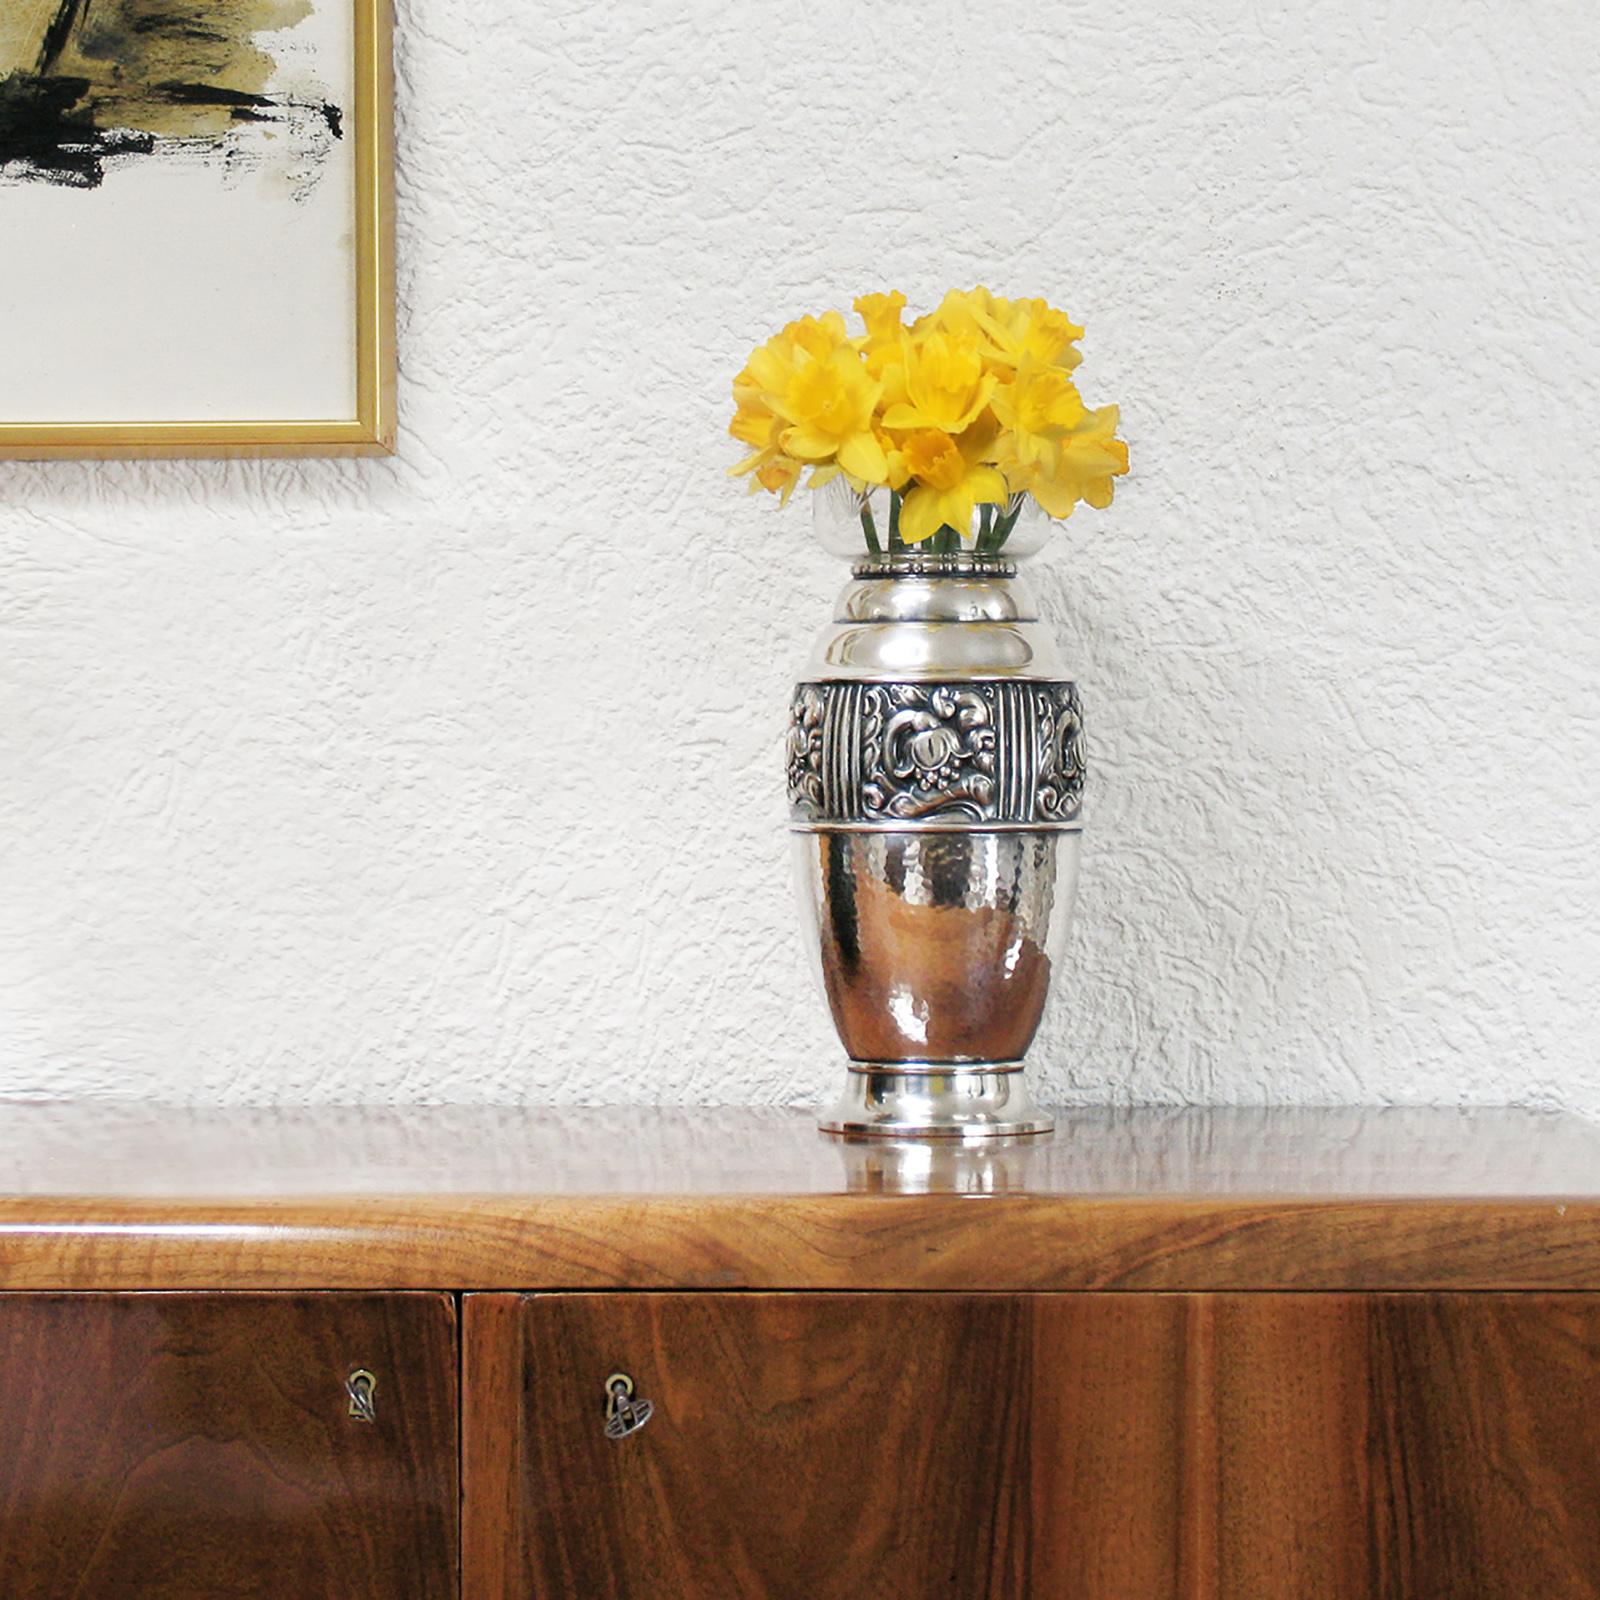 Art Nouveau, Jugendstil, Vase en métal argenté, Carl M Cohr, Danemark, années 1900.
Extrêmement rare, ce vase Jugendstil est un exemple exquis des œuvres du début des années 1900, remarquablement réalisé par le célèbre fabricant danois Carl M Cohr.